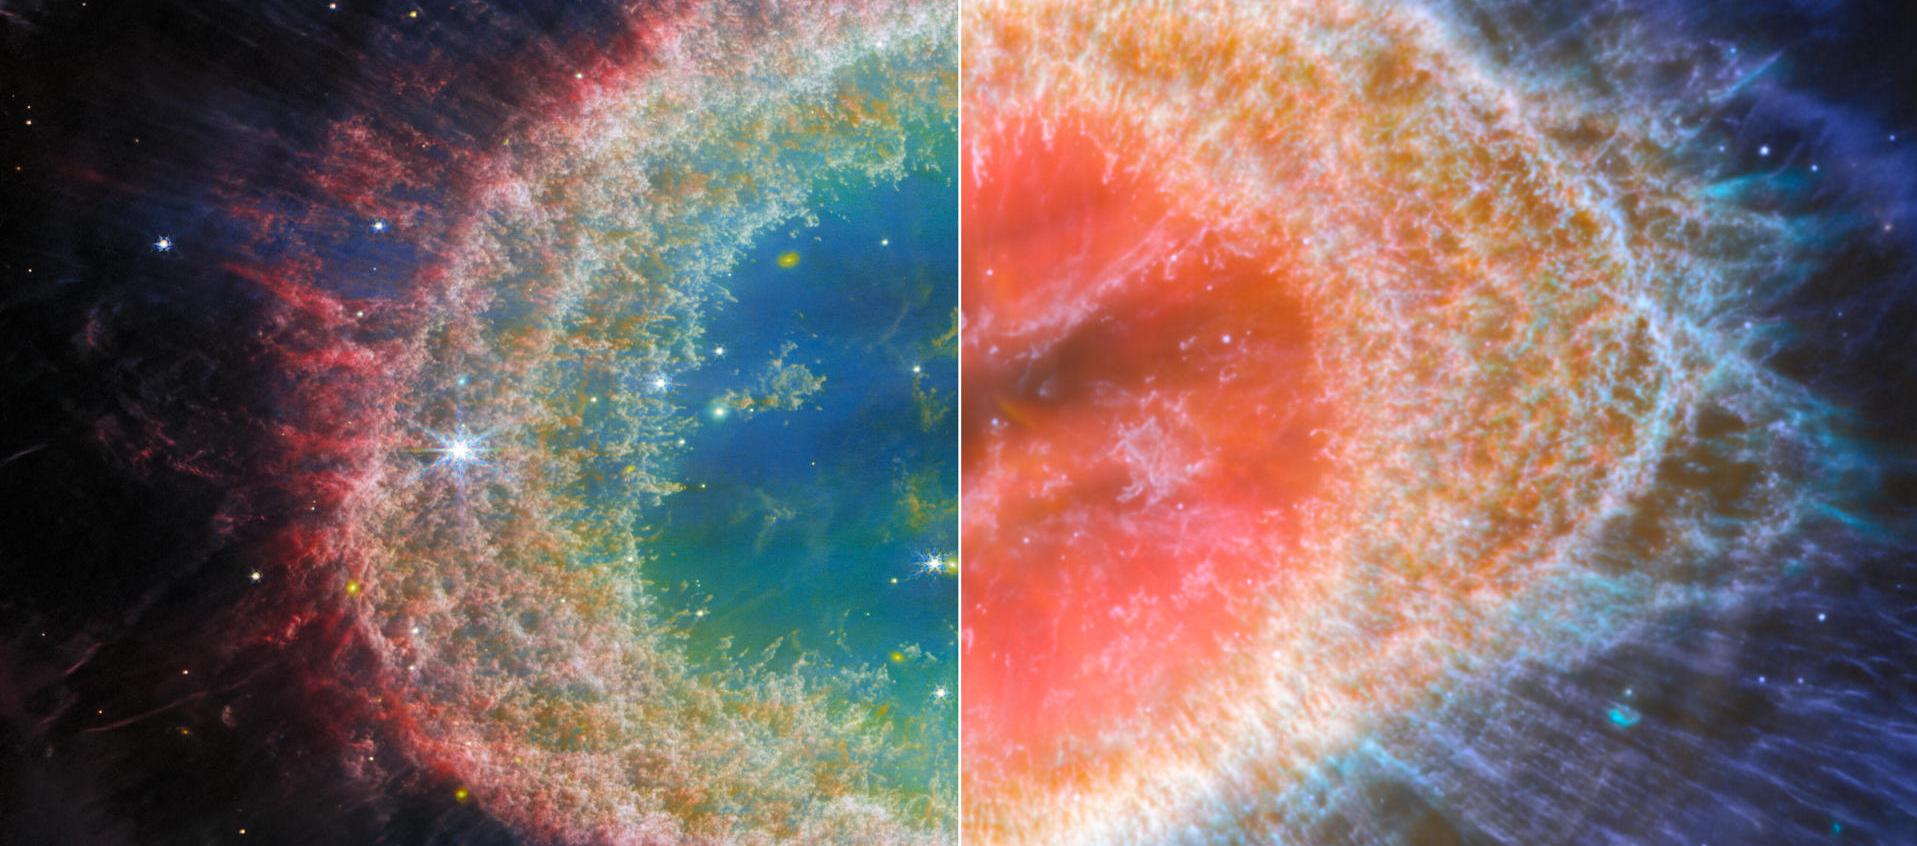  La Nebulosa del Anillo captada por el telescopio espacial James Webb de la NASA